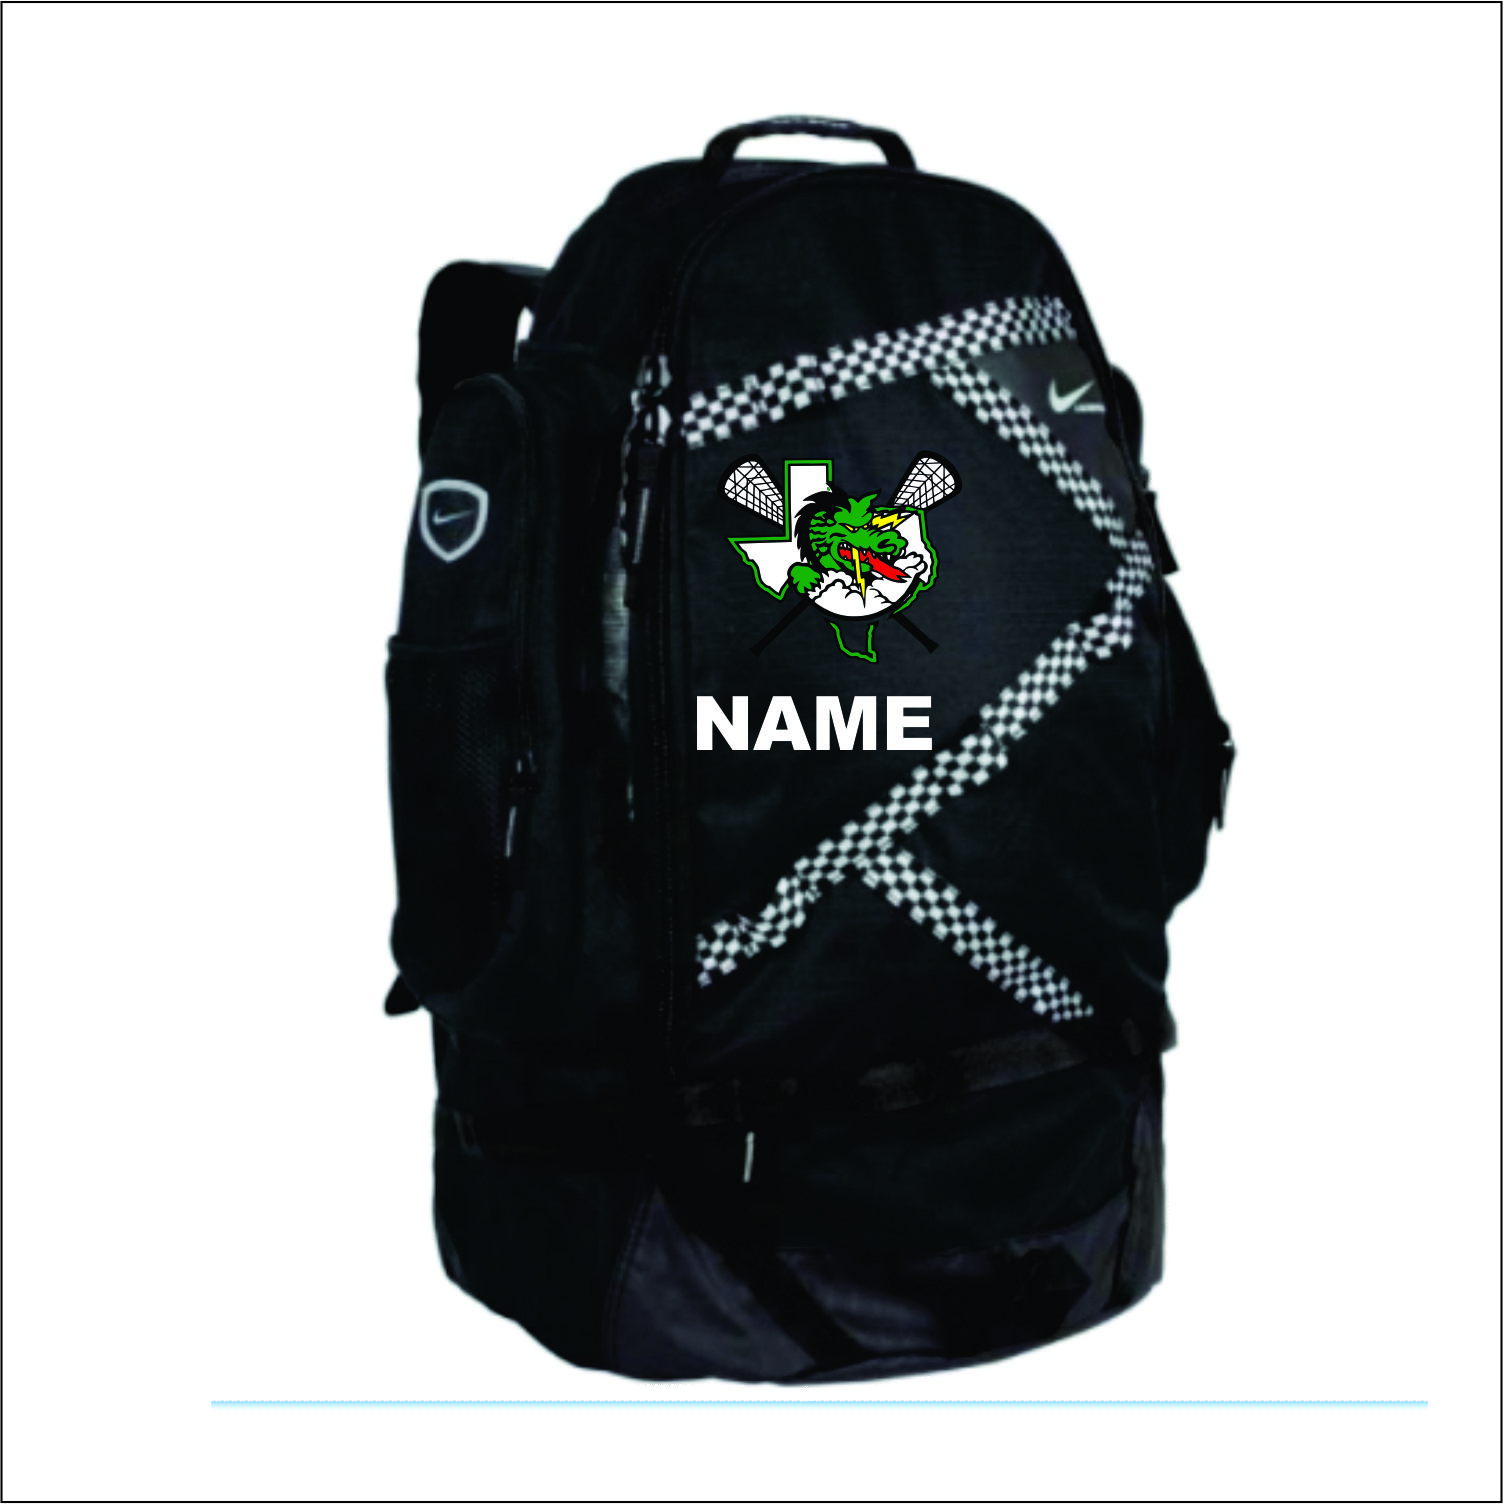 nike max air medium lacrosse backpack bag